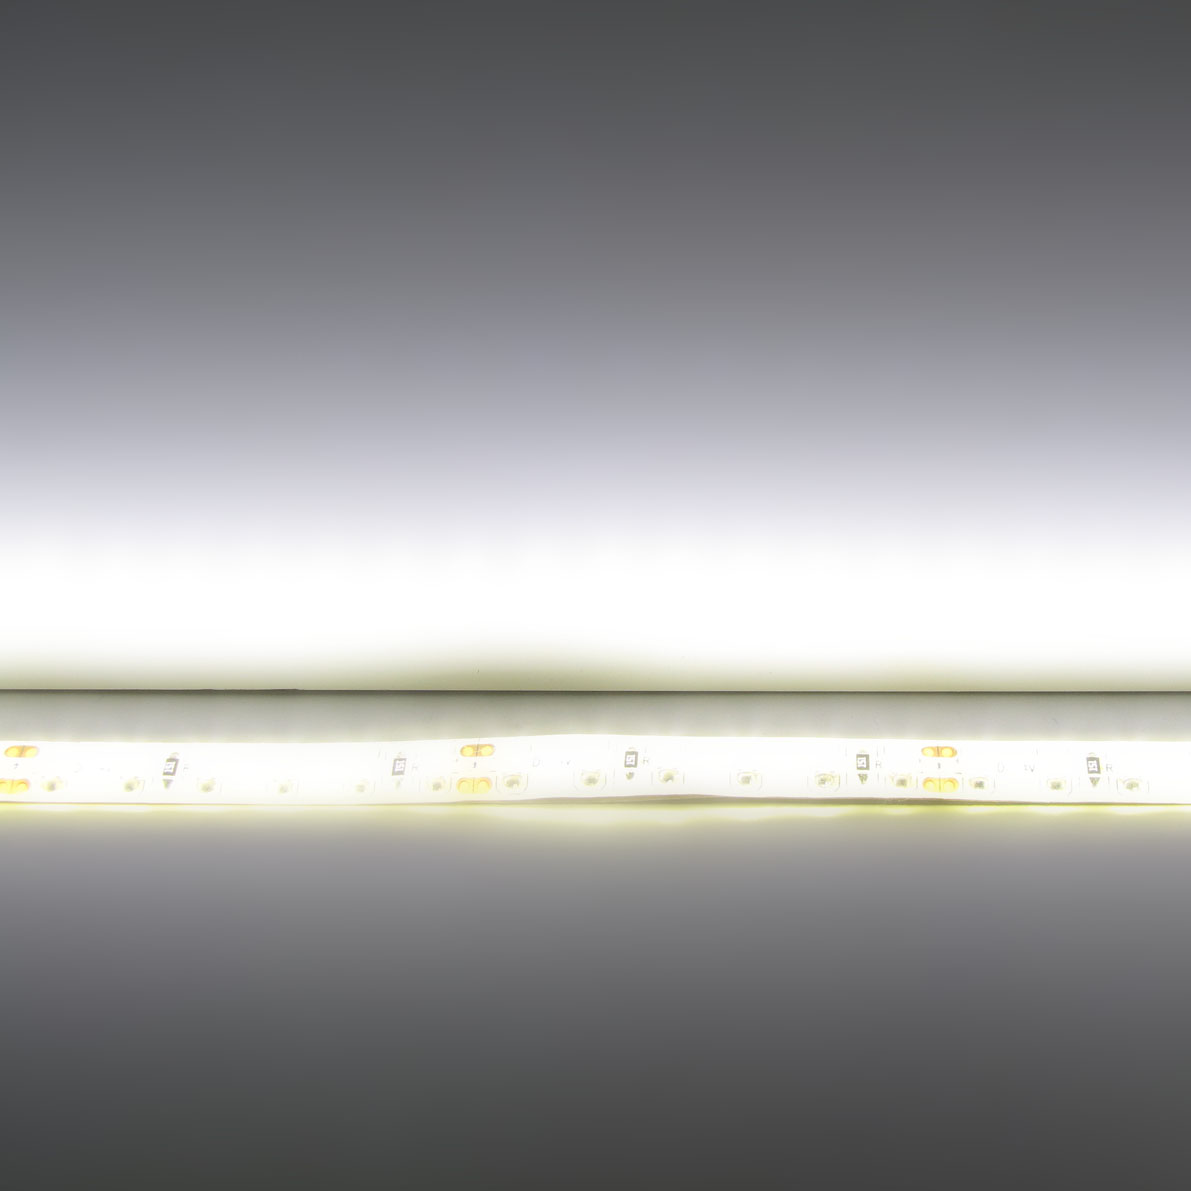 светодиодная лента standart pro class, 3528, 120 led/m, warm white, 24v, ip65, артикул 54280